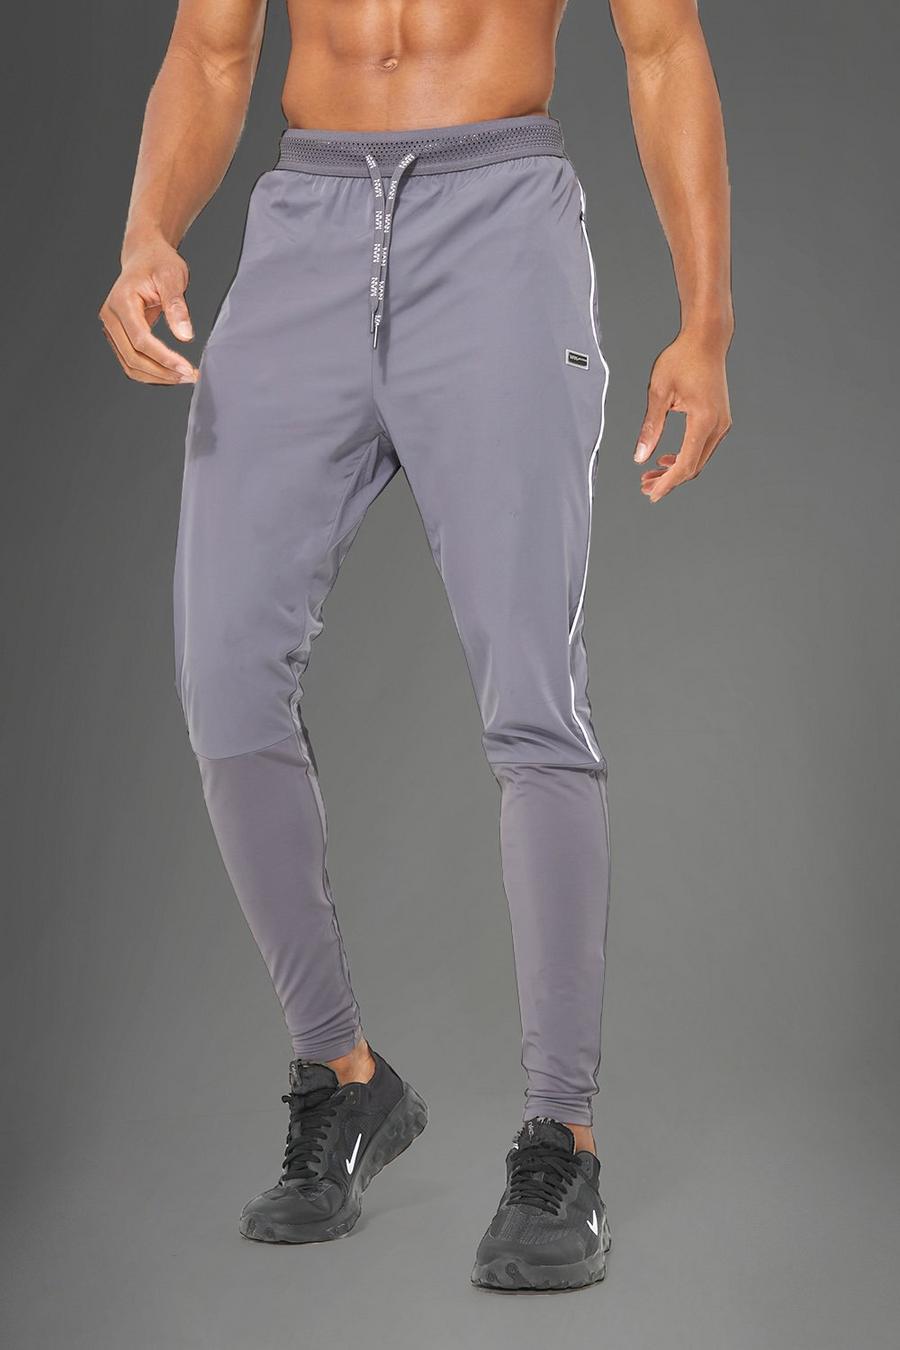 Pantalón deportivo MAN pitillo técnico ligero, Charcoal gris